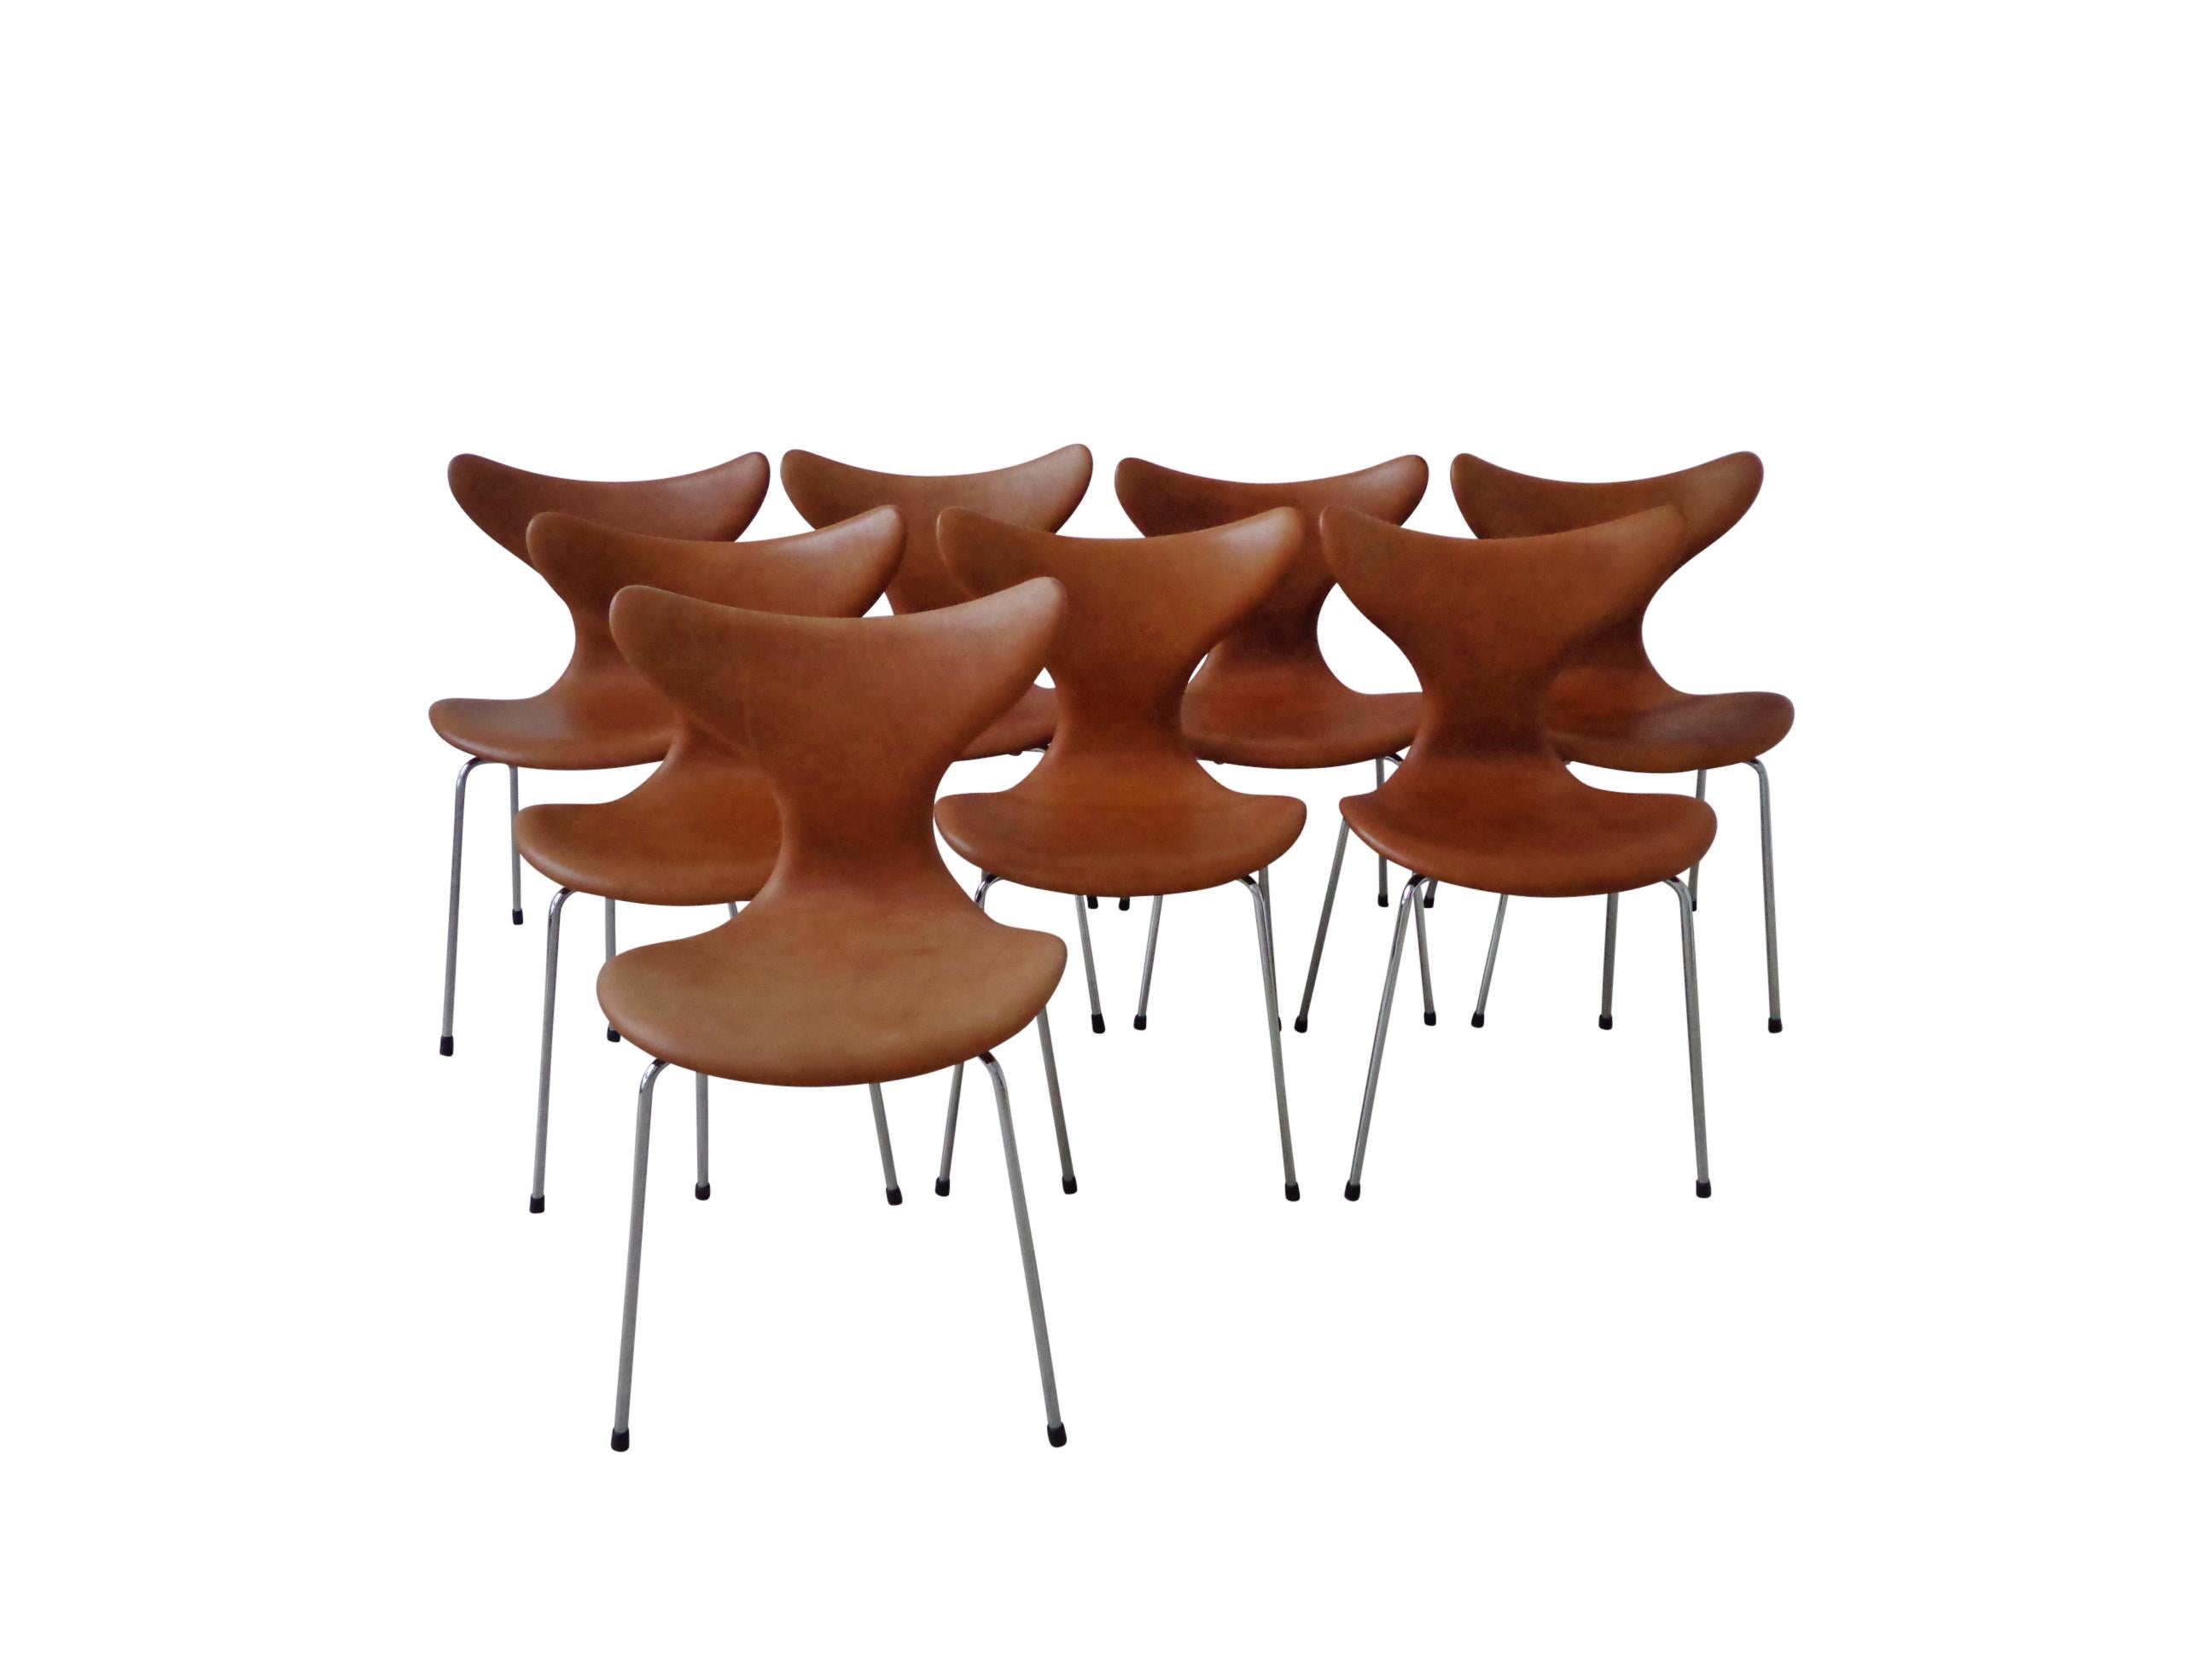 Un ensemble de 8 chaises de salle à manger, modèle Lily 3108, conçu par Arne Jacobsen en 1970, fabriqué par Fritz Hansen. Arne Jacobsen a d'abord créé la chaise Lily, aux courbes élégantes, pour la Danmarks Nationalbank. Les chaises sont en très bon